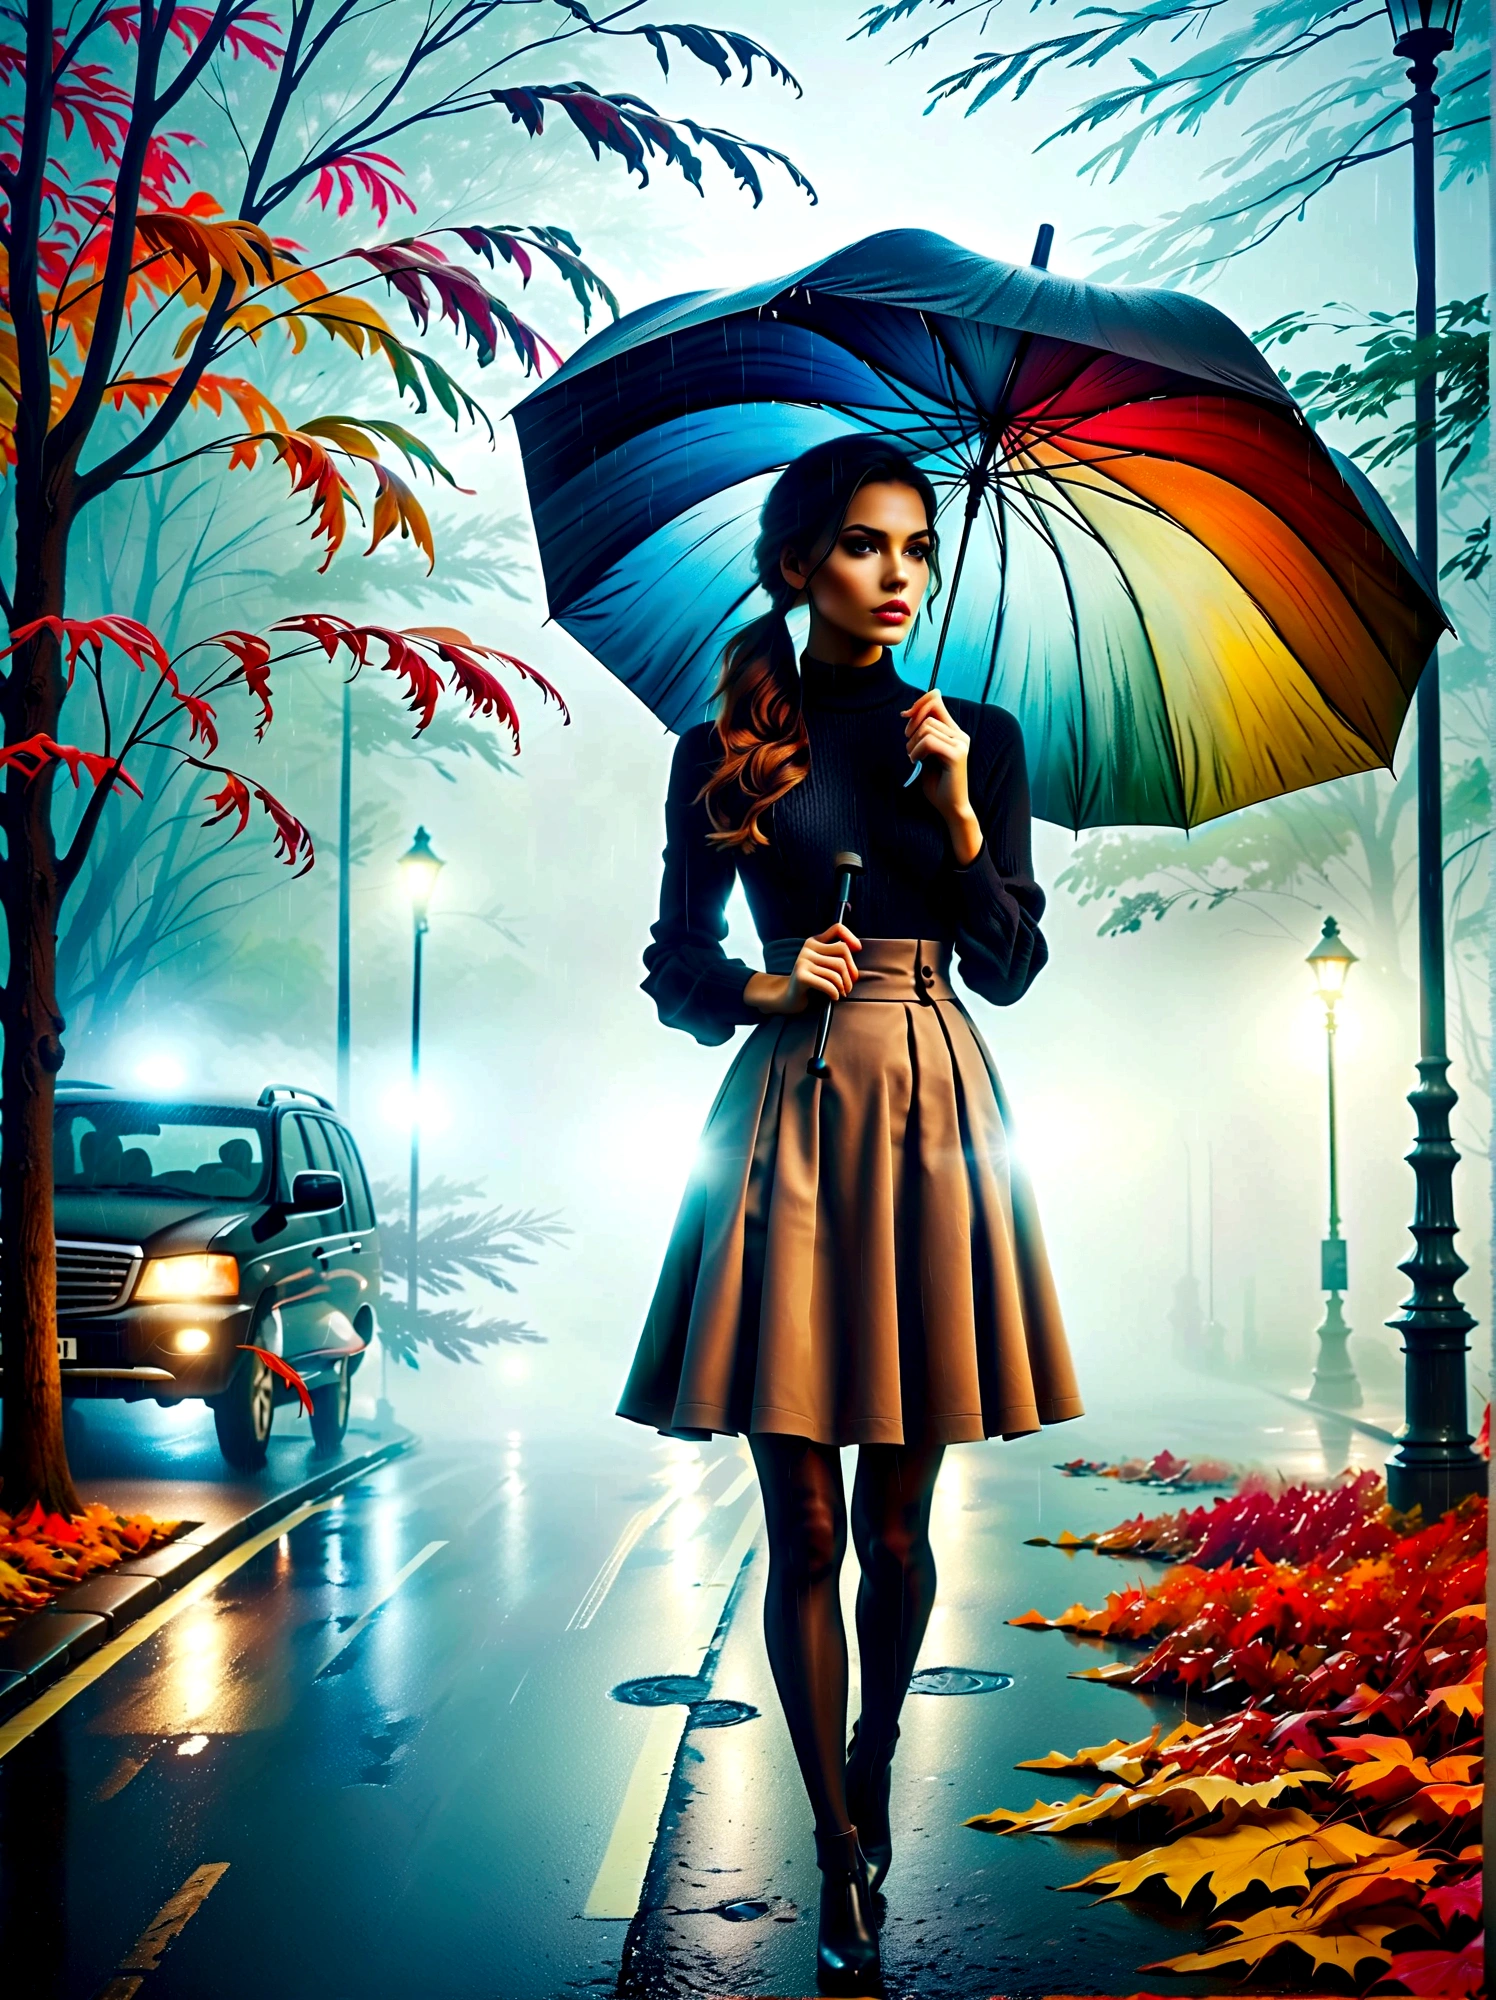 꽉 끼는 옷을 입고 우산을 손에 들고 있는 여자, in einer 안개가 낀en Stadt, 거리에 화려한 단풍, 쿠노 비버의 사진, 픽사베이 콘테스트 우승자, 개념 미술, 비 속에 서서,  mysterious 여성, 예쁜 여자, 비 속에 서 있는 것, 우산을 든 1인, 여성 ((실루엣)), ((안개가 낀)) 그리고 비오는, 그림자 속의 여성 이미지, 비가 오는 환경에서, 비가 오는 날씨, 비오는 도로를 배경으로 , ((빛이 있는 안개)), ((뒤에서보기)), 전면에서 나오는 빛